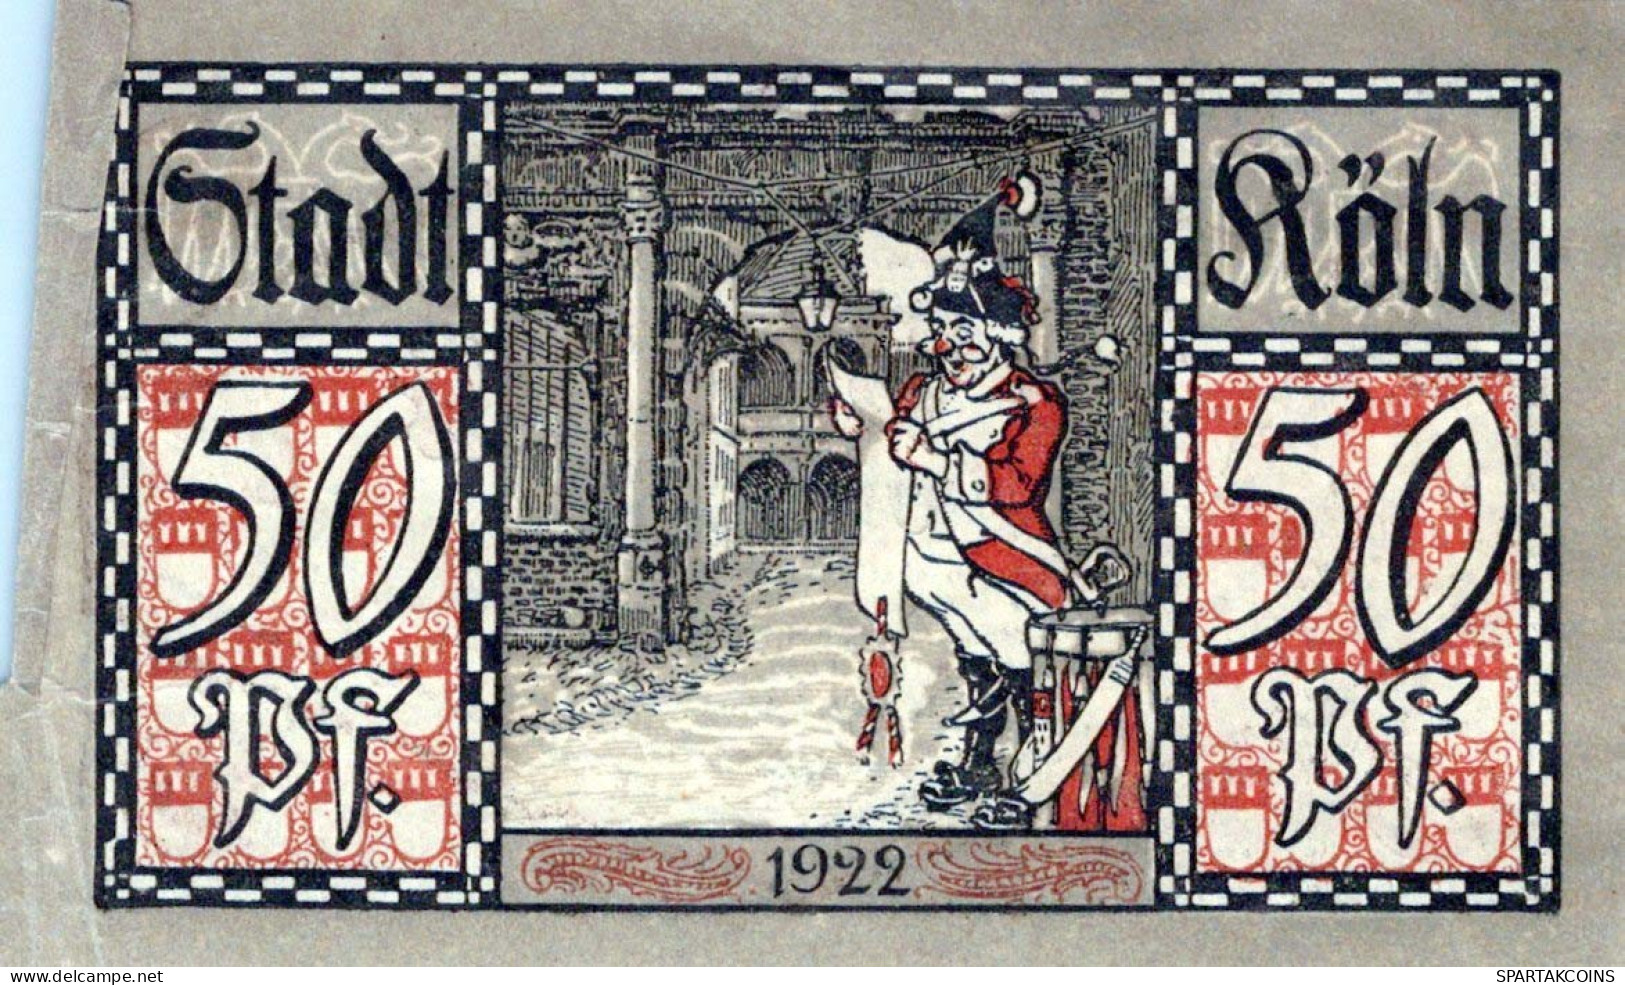 50 PFENNIG 1922 Stadt COLOGNE Rhine DEUTSCHLAND Notgeld Banknote #PG379 - [11] Local Banknote Issues